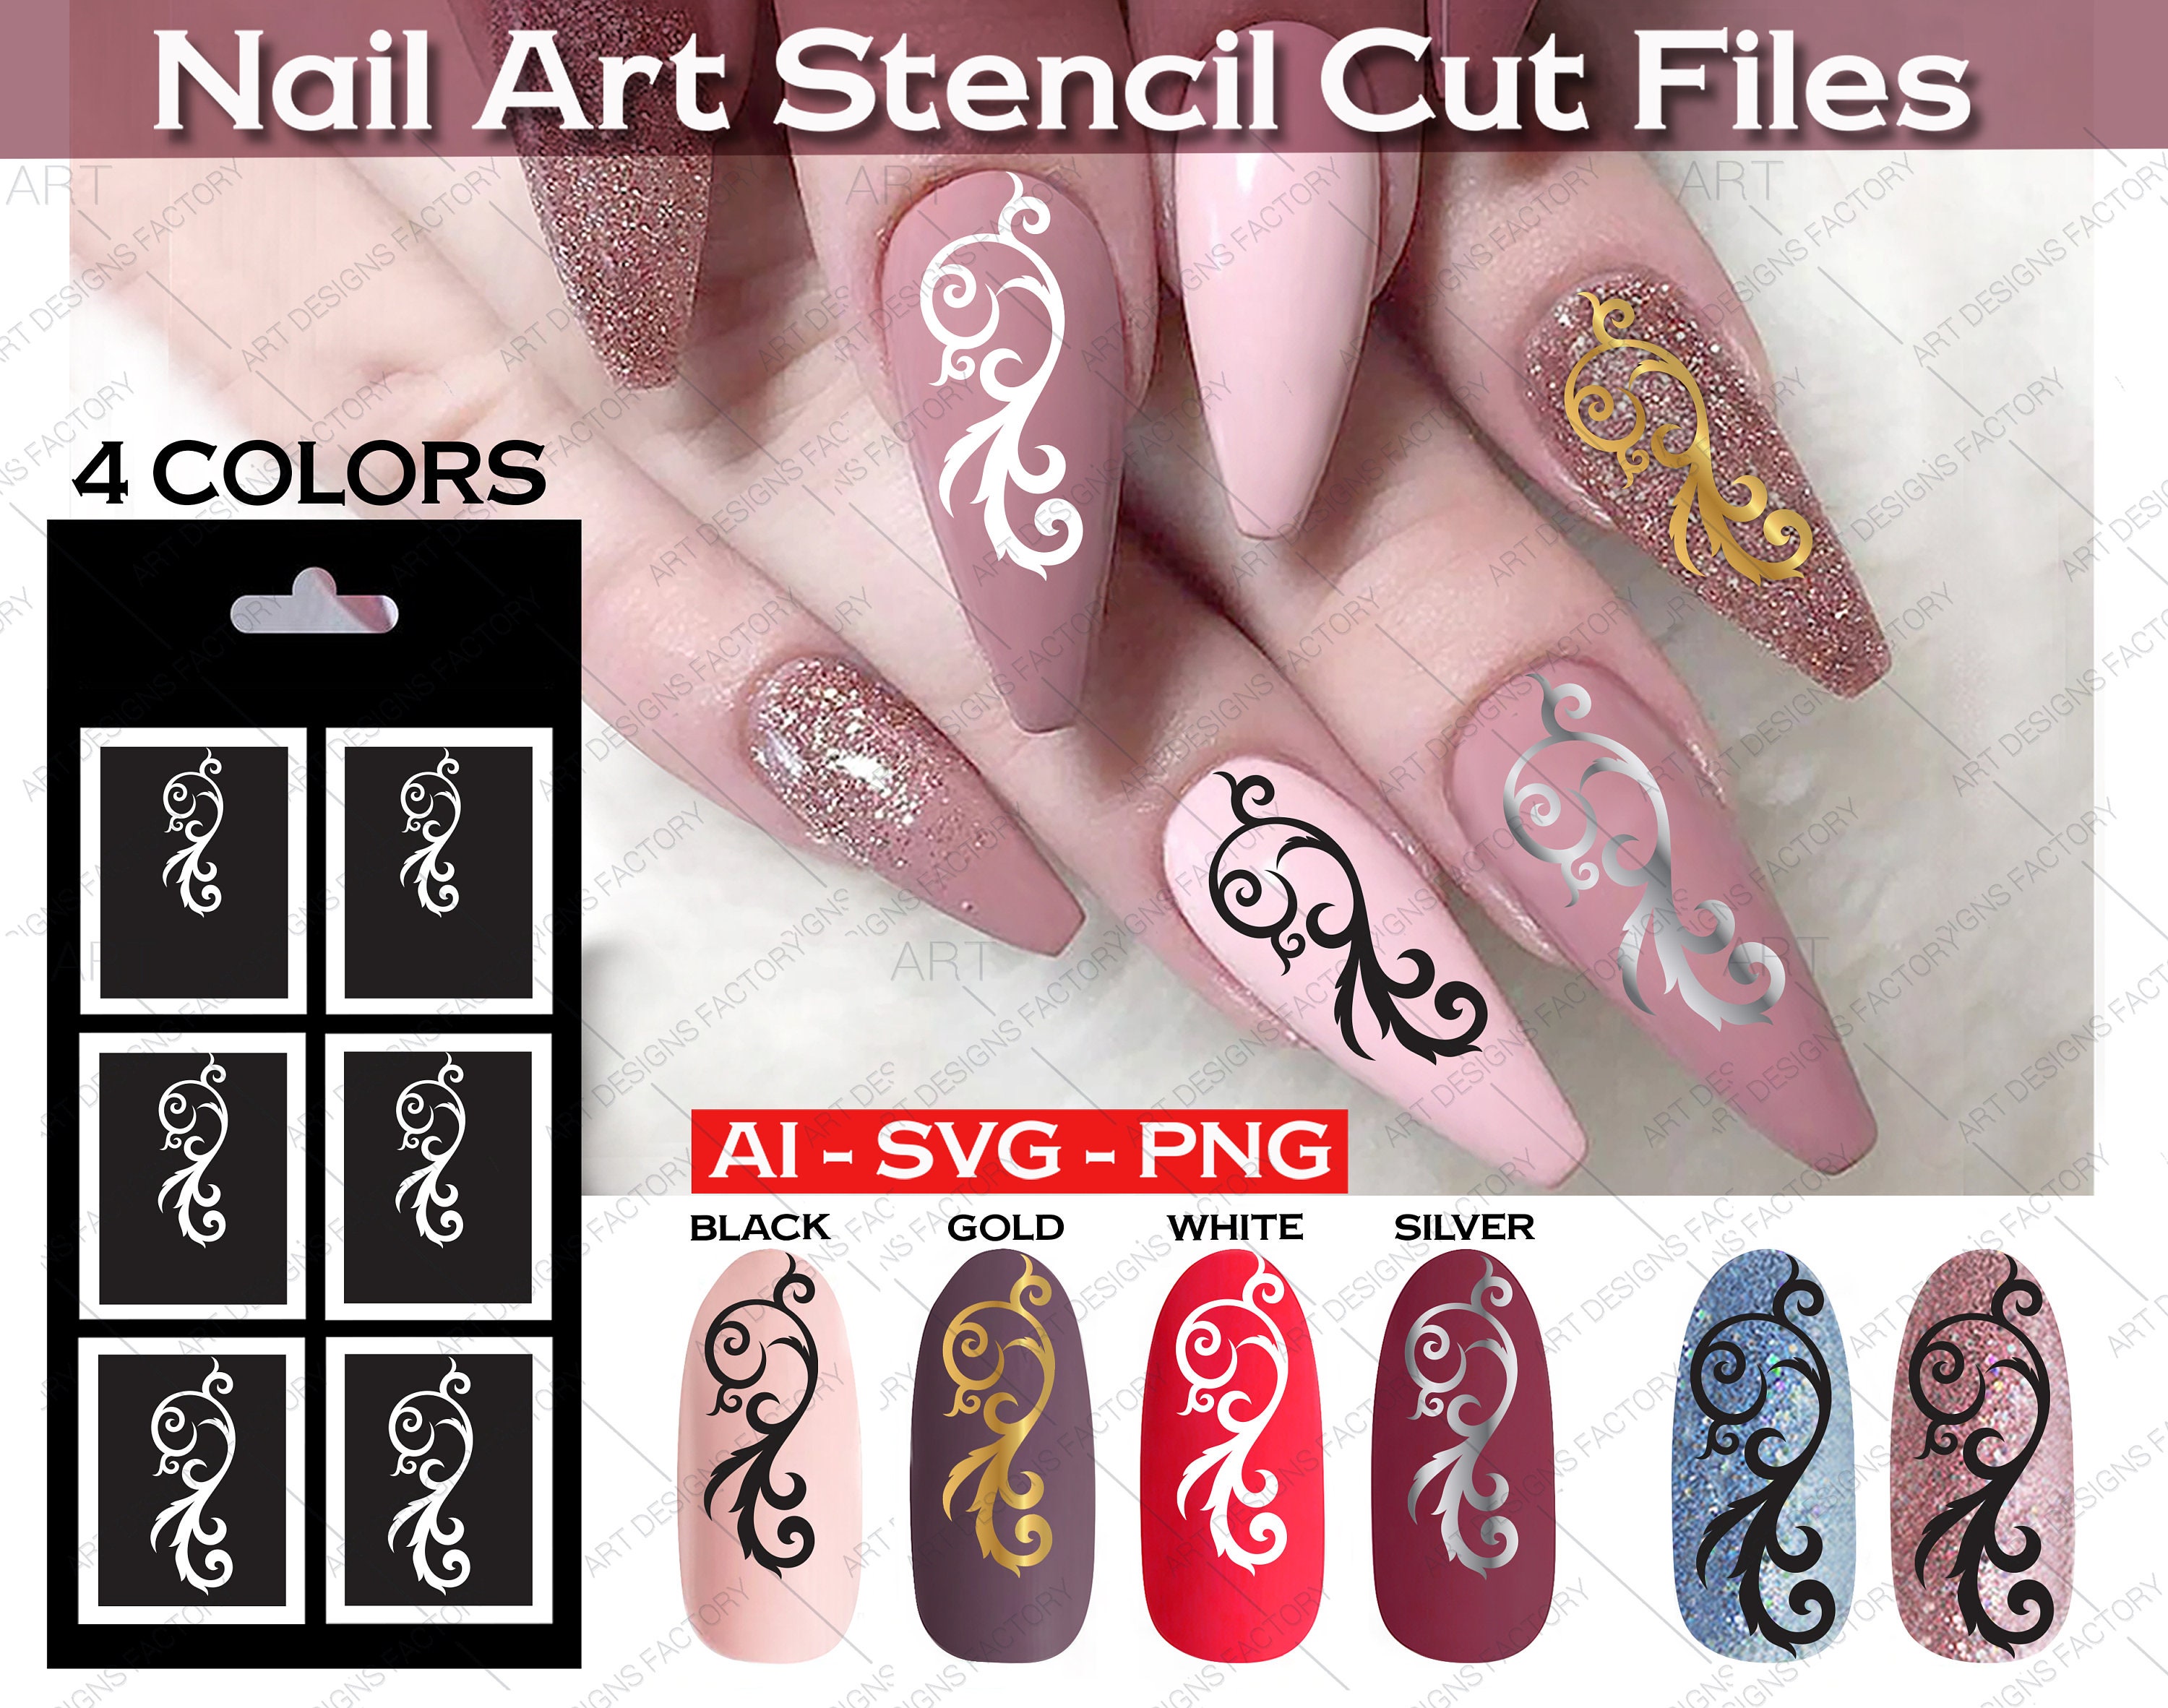 4. Nail Art Stencil Tape Rolls - wide 9